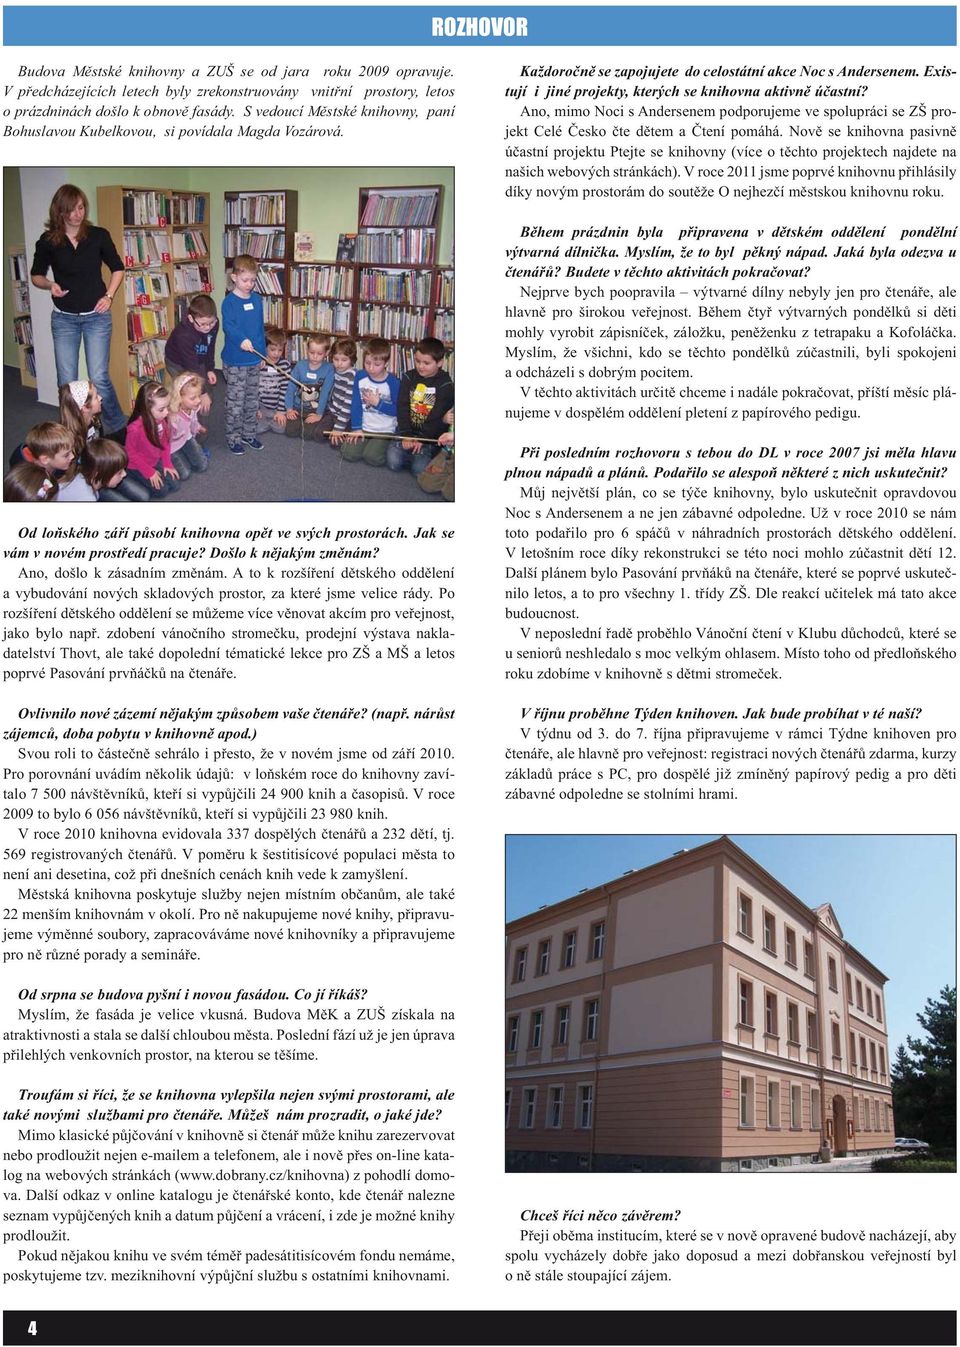 Existují i jiné projekty, kterých se knihovna aktivně účastní? Ano, mimo Noci s Andersenem podporujeme ve spolupráci se ZŠ projekt Celé Česko čte dětem a Čtení pomáhá.